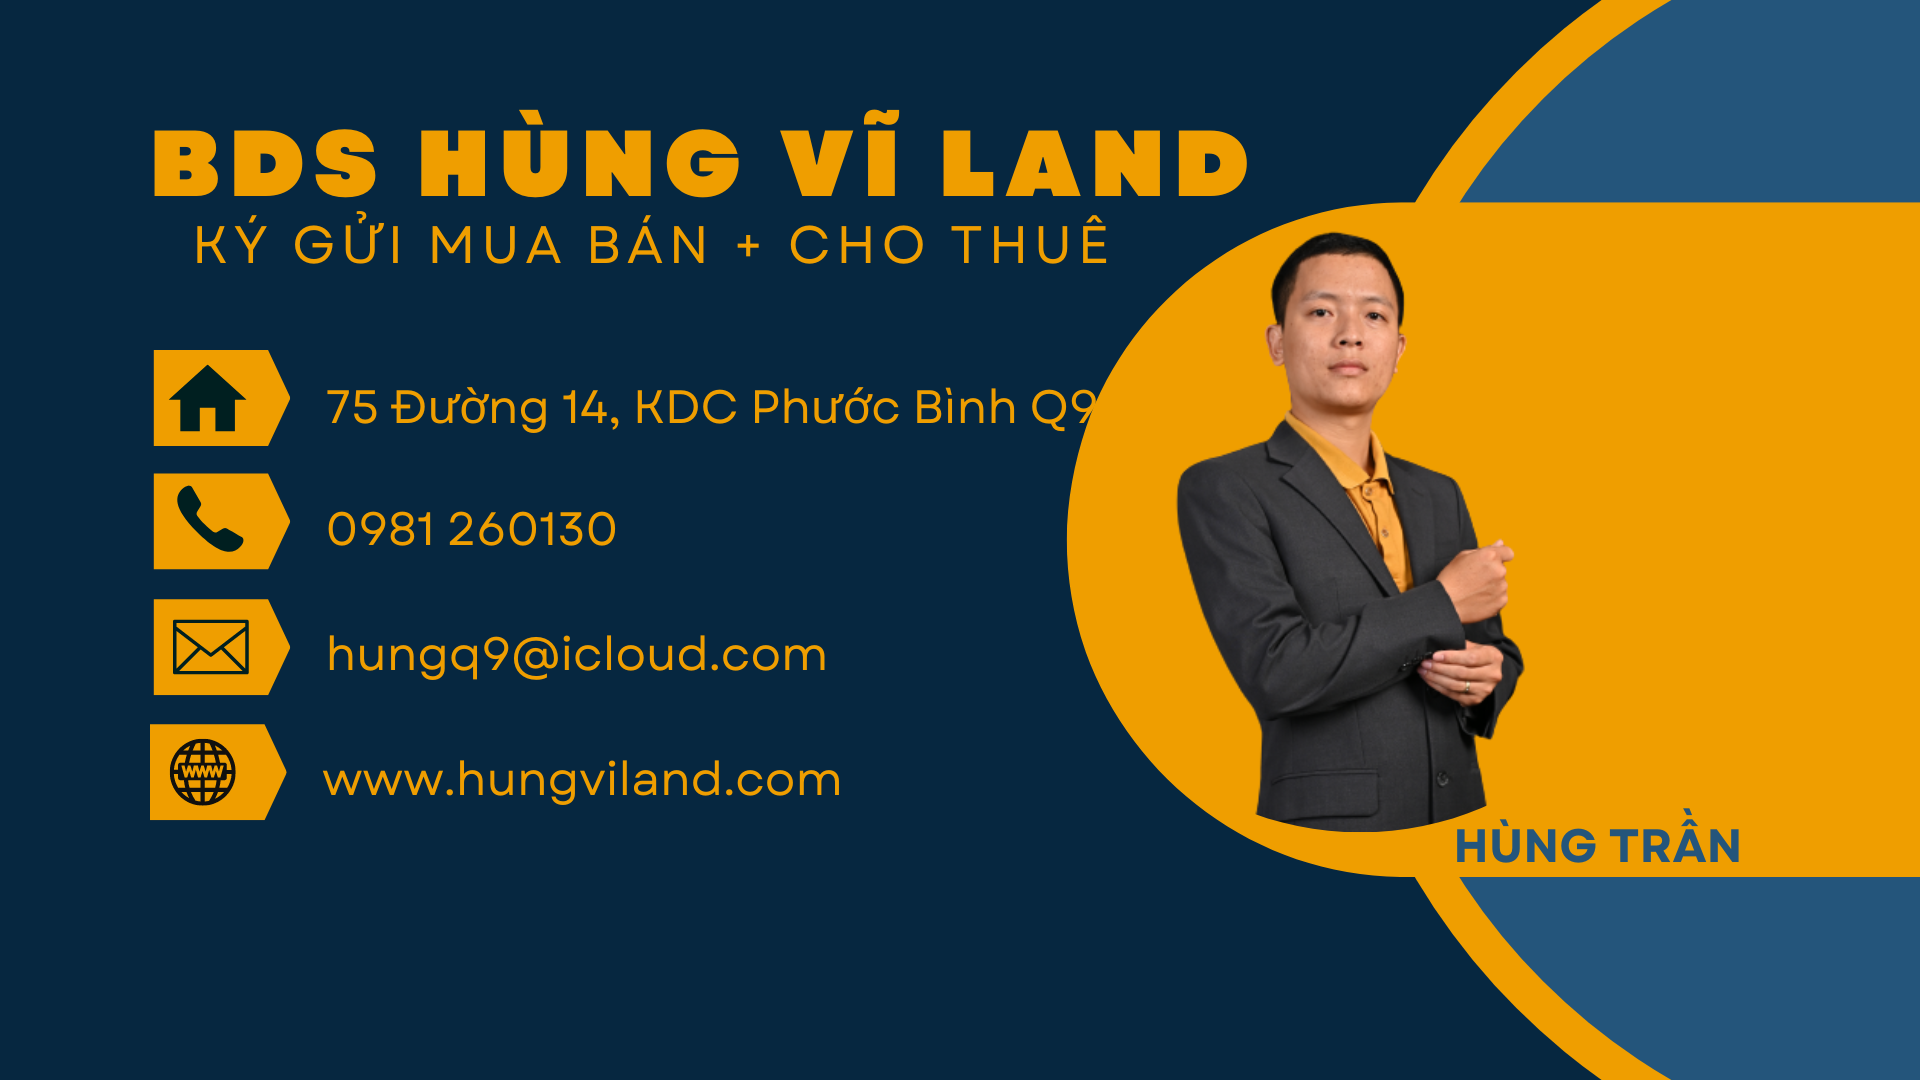 BDS HUNGVILAND  Biệt Thự Compound ABC Trần Não - Q2 Giá 95 Tỉ 30/03/2023